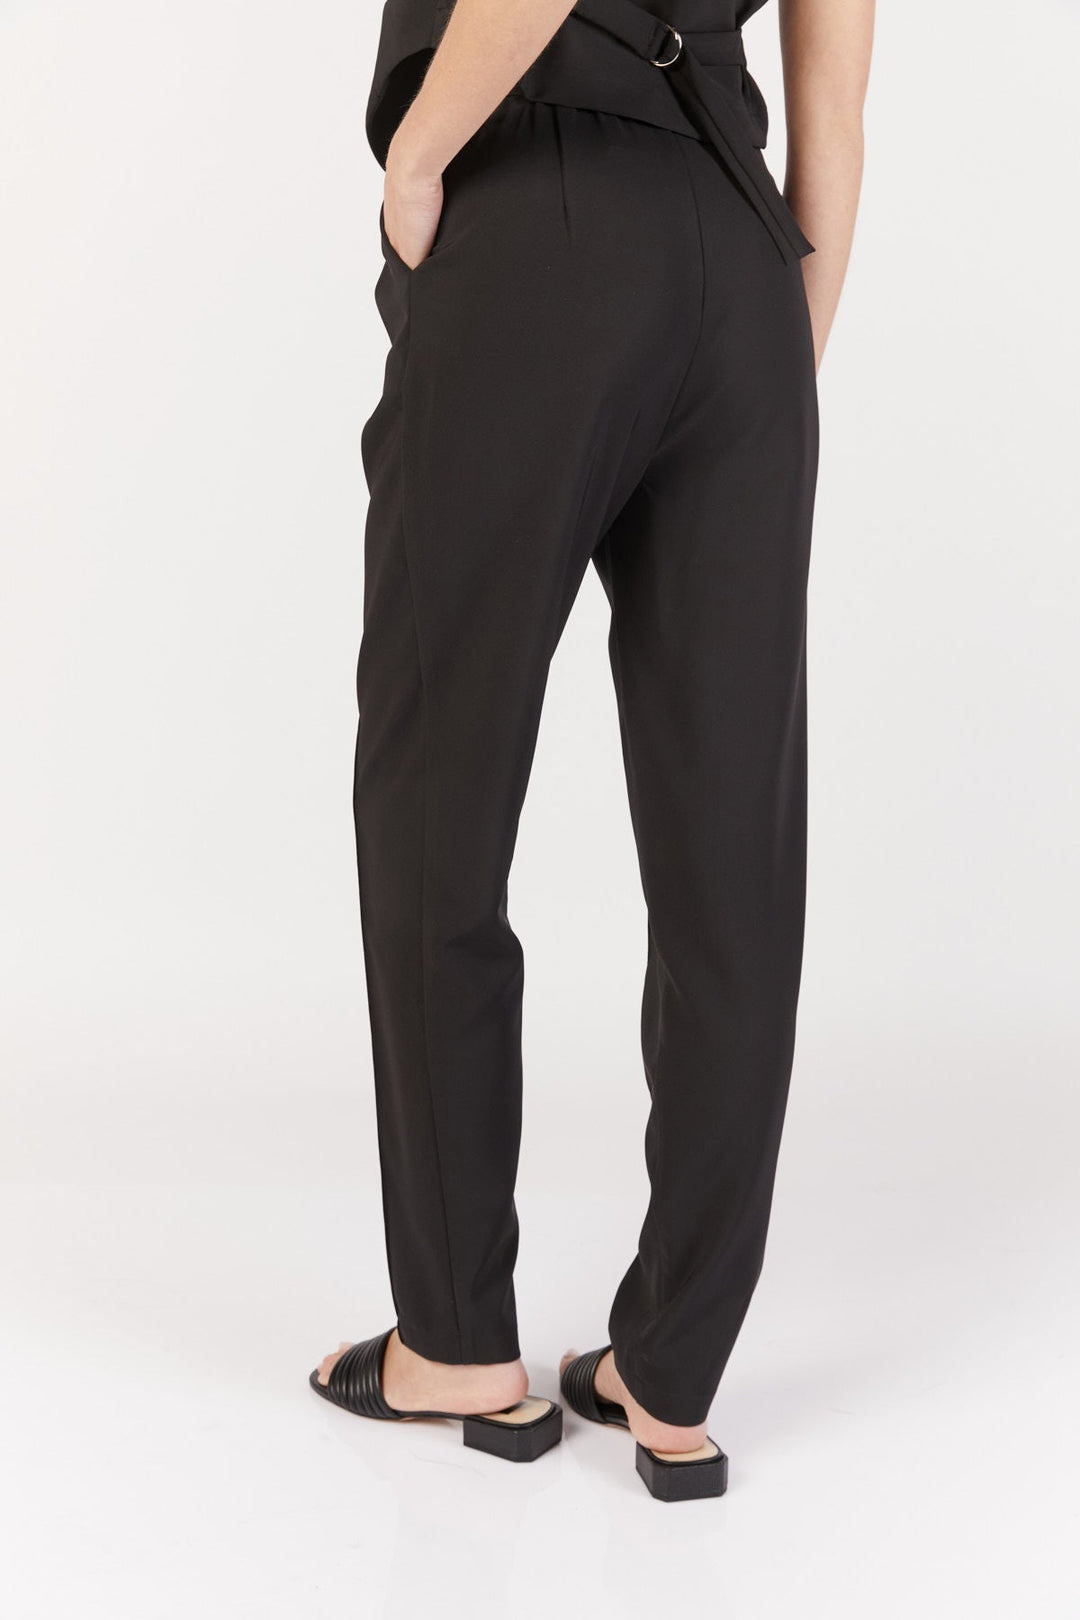 מכנסי גרקון בצבע שחור - Dana Sidi